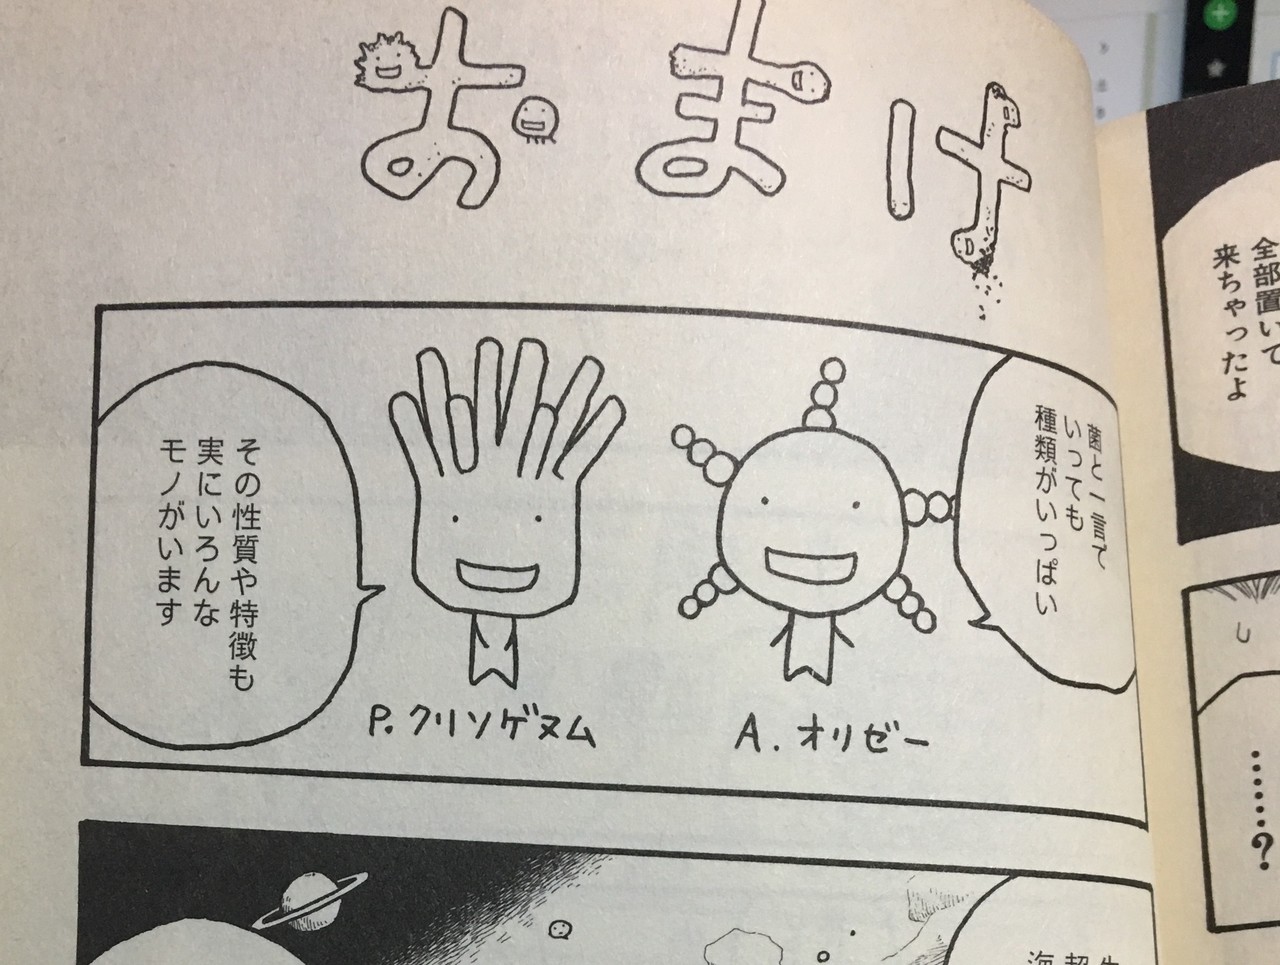 漫画 もやしもん 1巻 菌が教えてくれた 社会構造 久保 陽香 Kubo Haruka Note